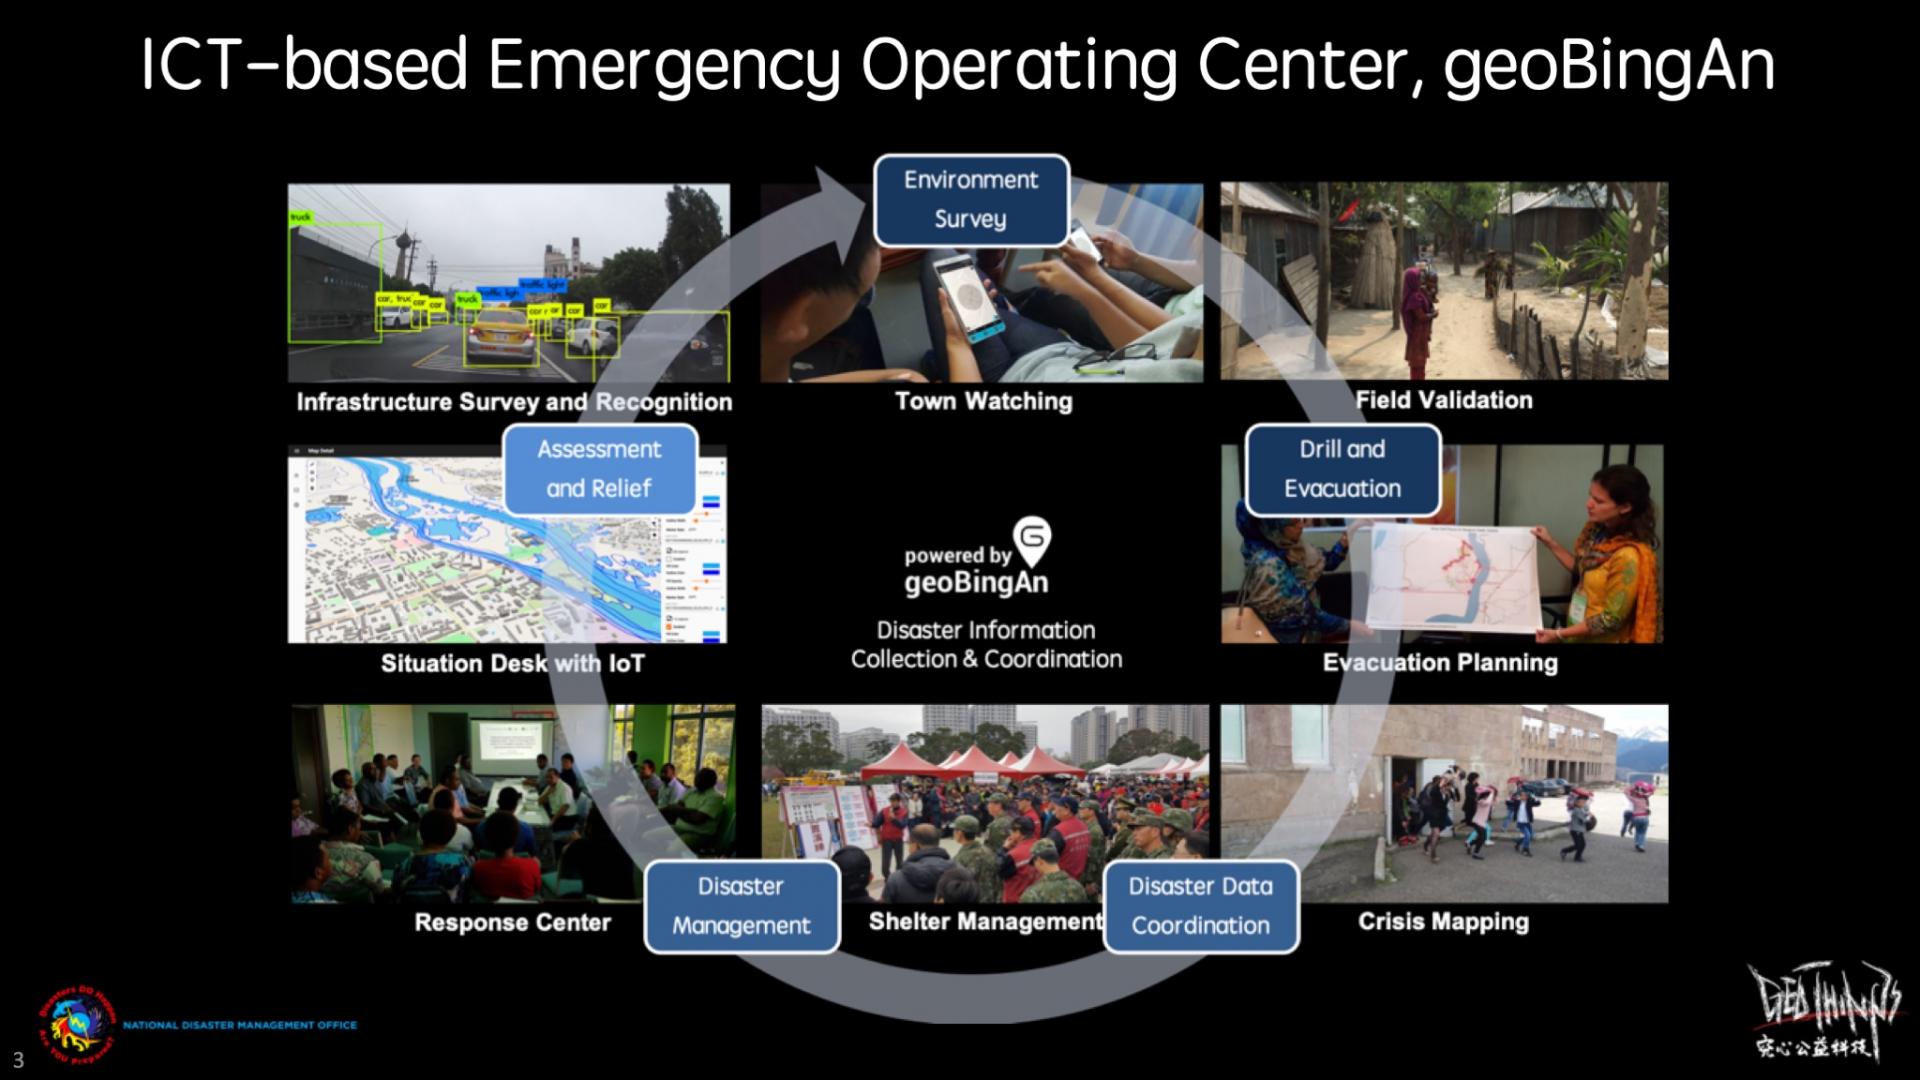 IKT-verktyget geoBingAn med dess humanitära informations- och kommunikationsteknik är en integrerad tjänst som kan användas för undersökningar före en katastrof, vid insatser under en katastrof och för utvärdering efter en katastrof.